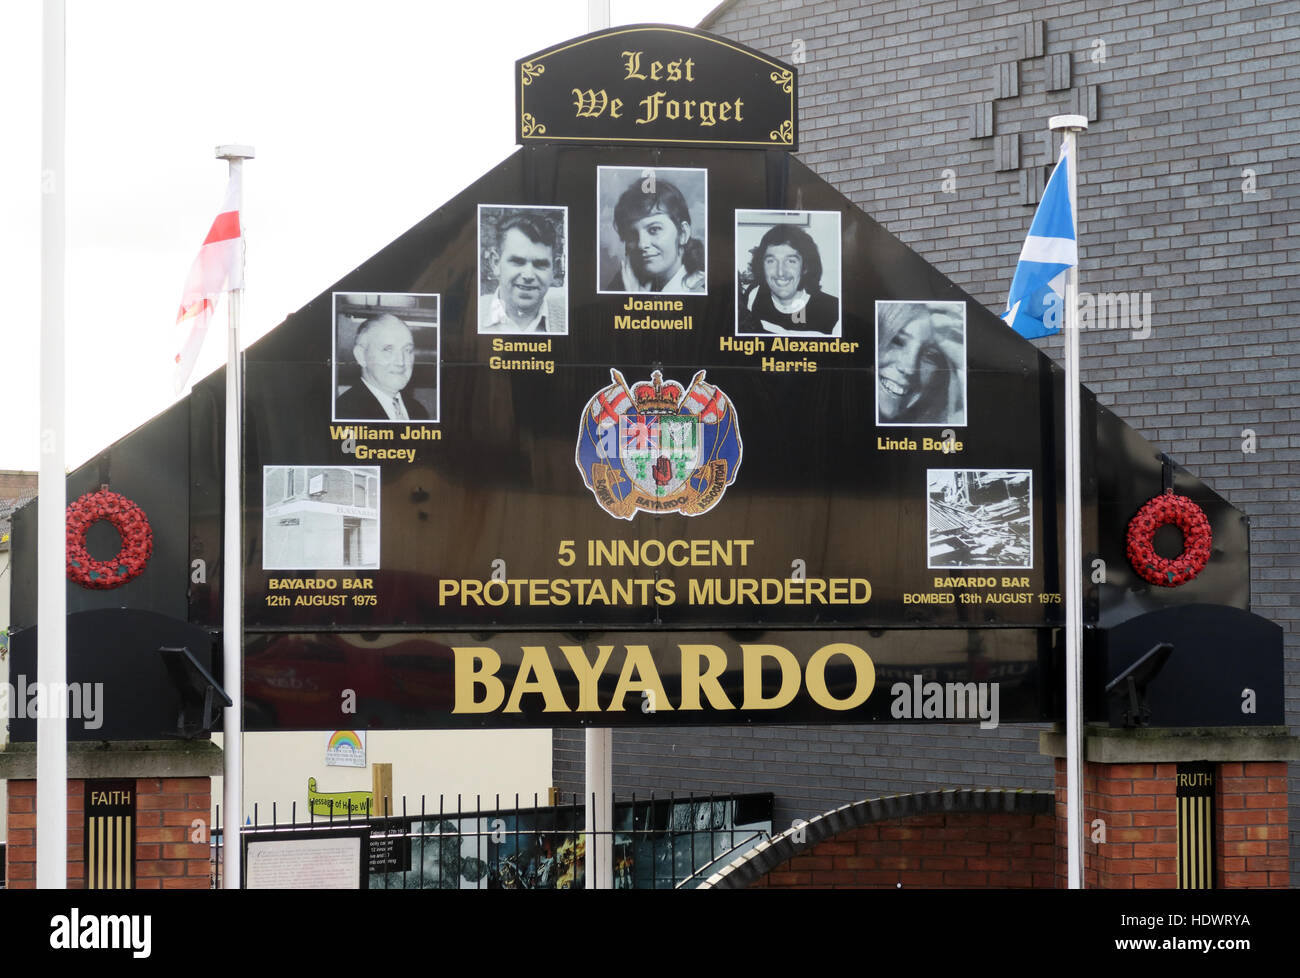 Bayardo Bar Wandbild aus Shankill Road West Belfast, Nordirland, Vereinigtes Königreich Stockfoto